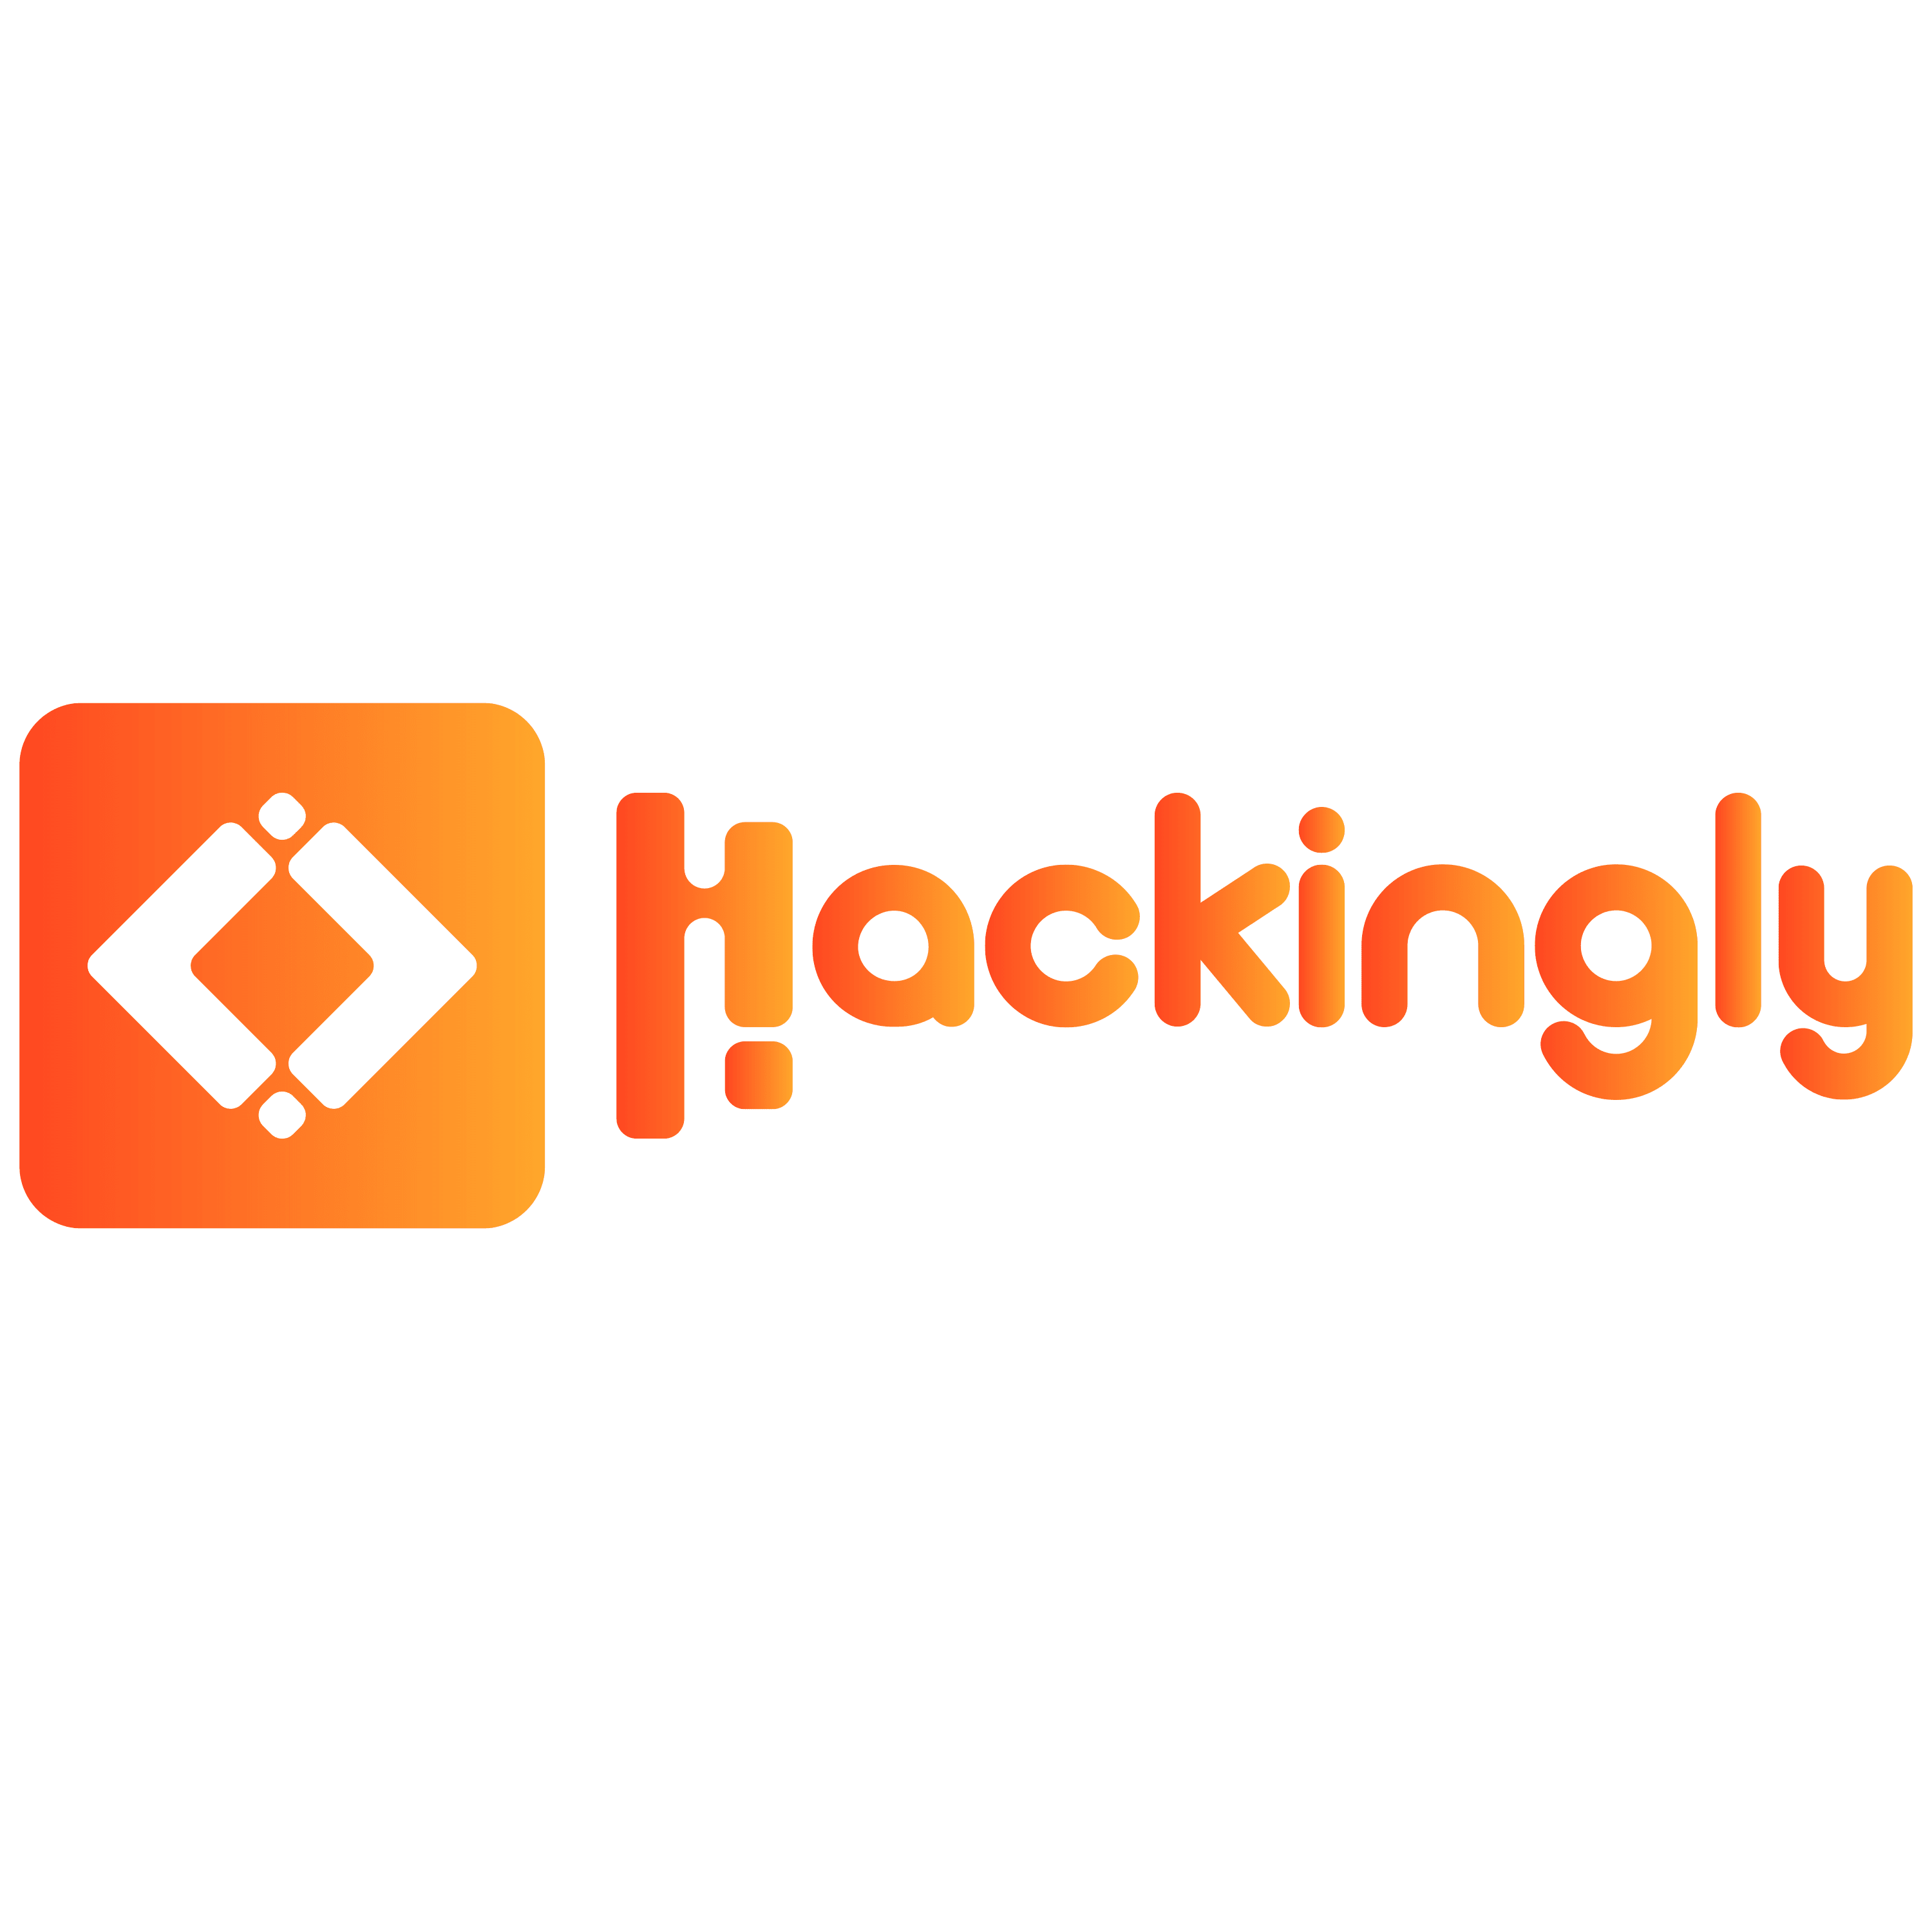 Hackingly logo